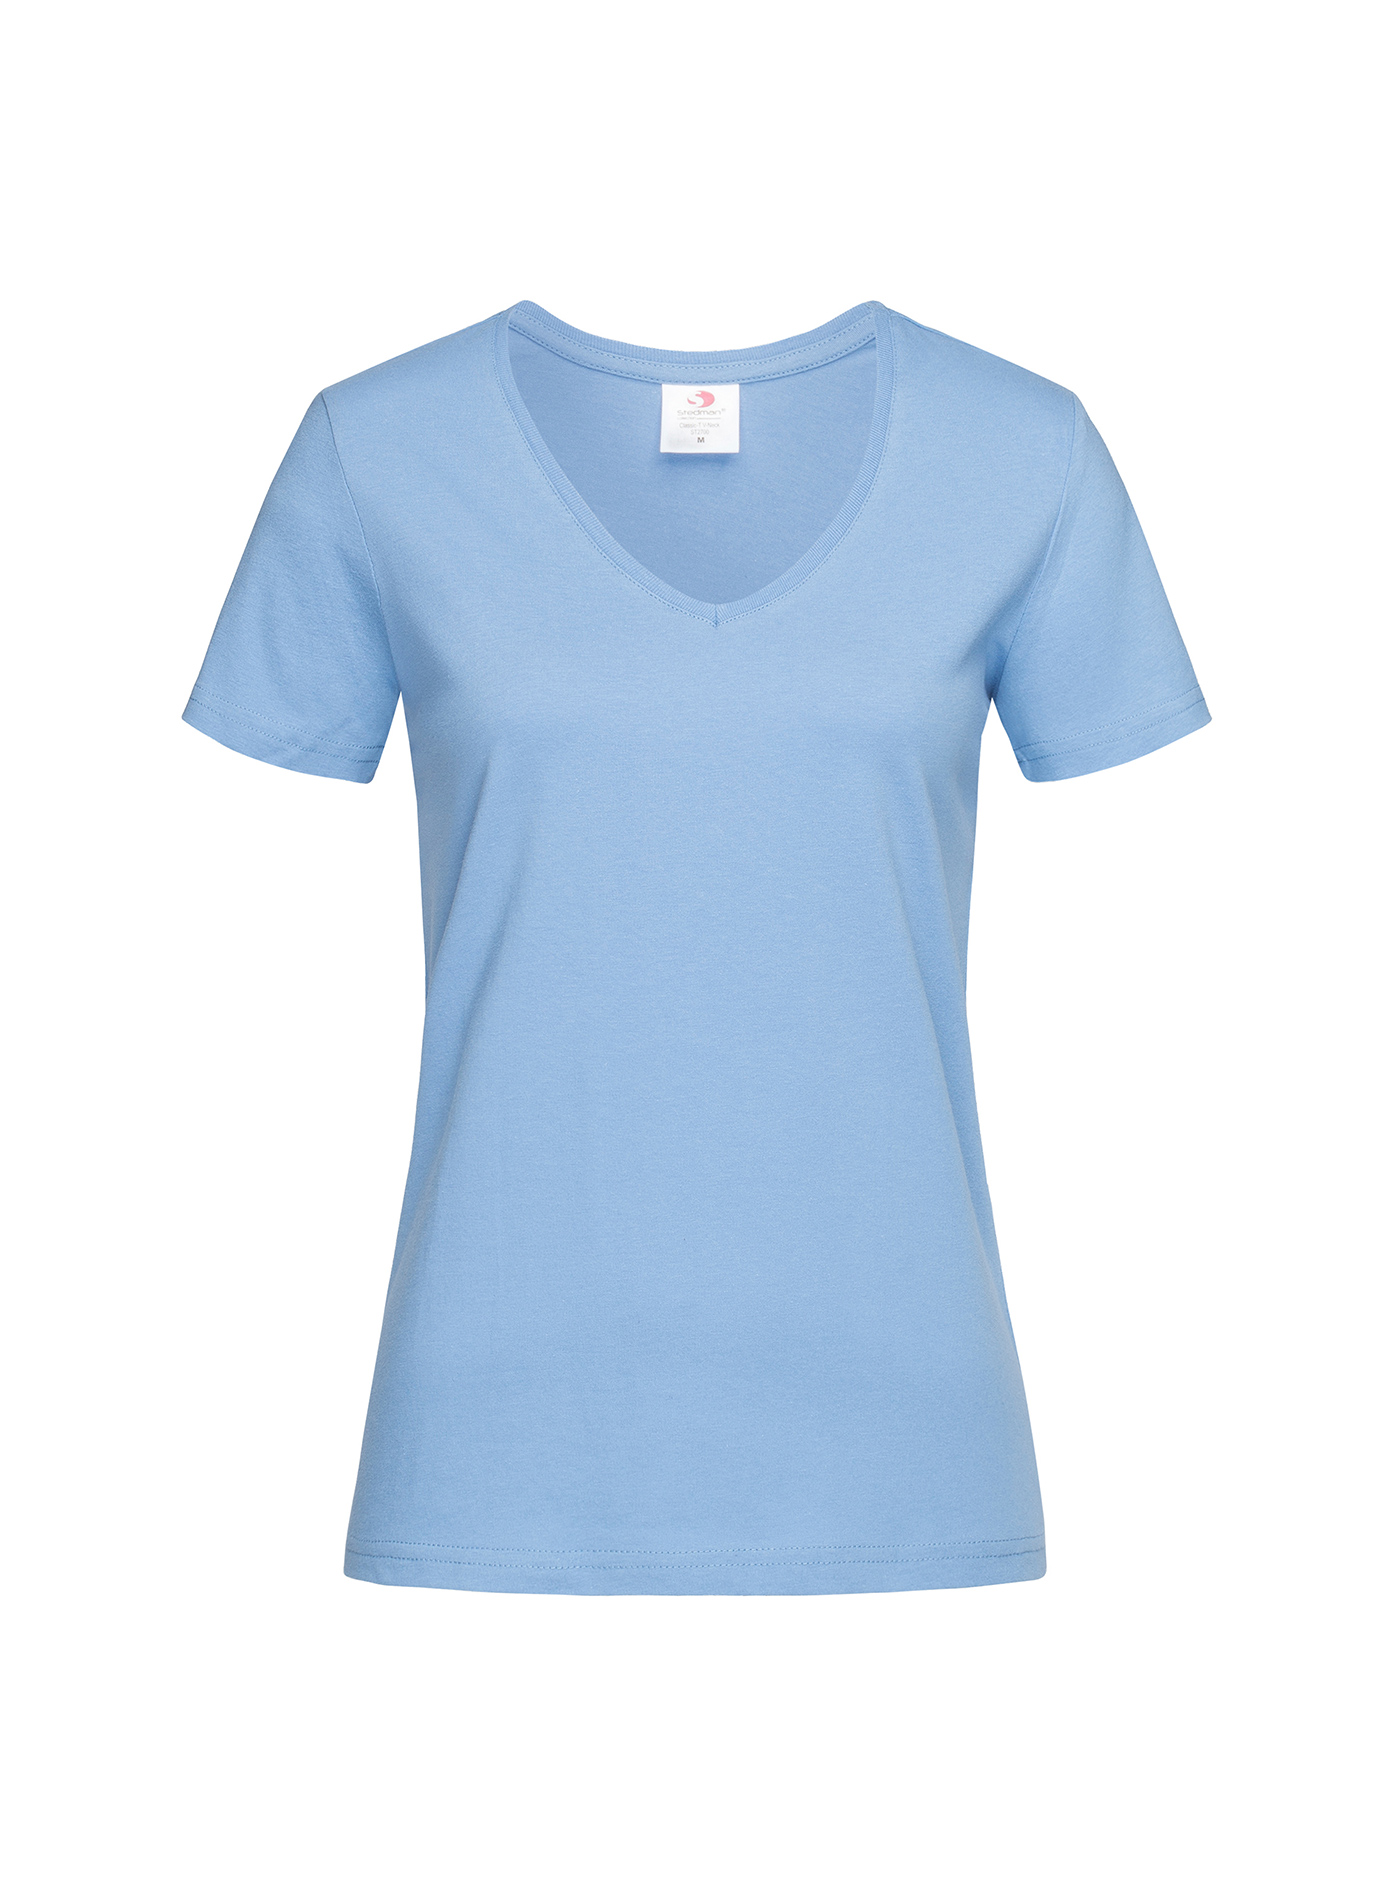 Dámské tričko s V-výstřihem Stedman - světle modrá S